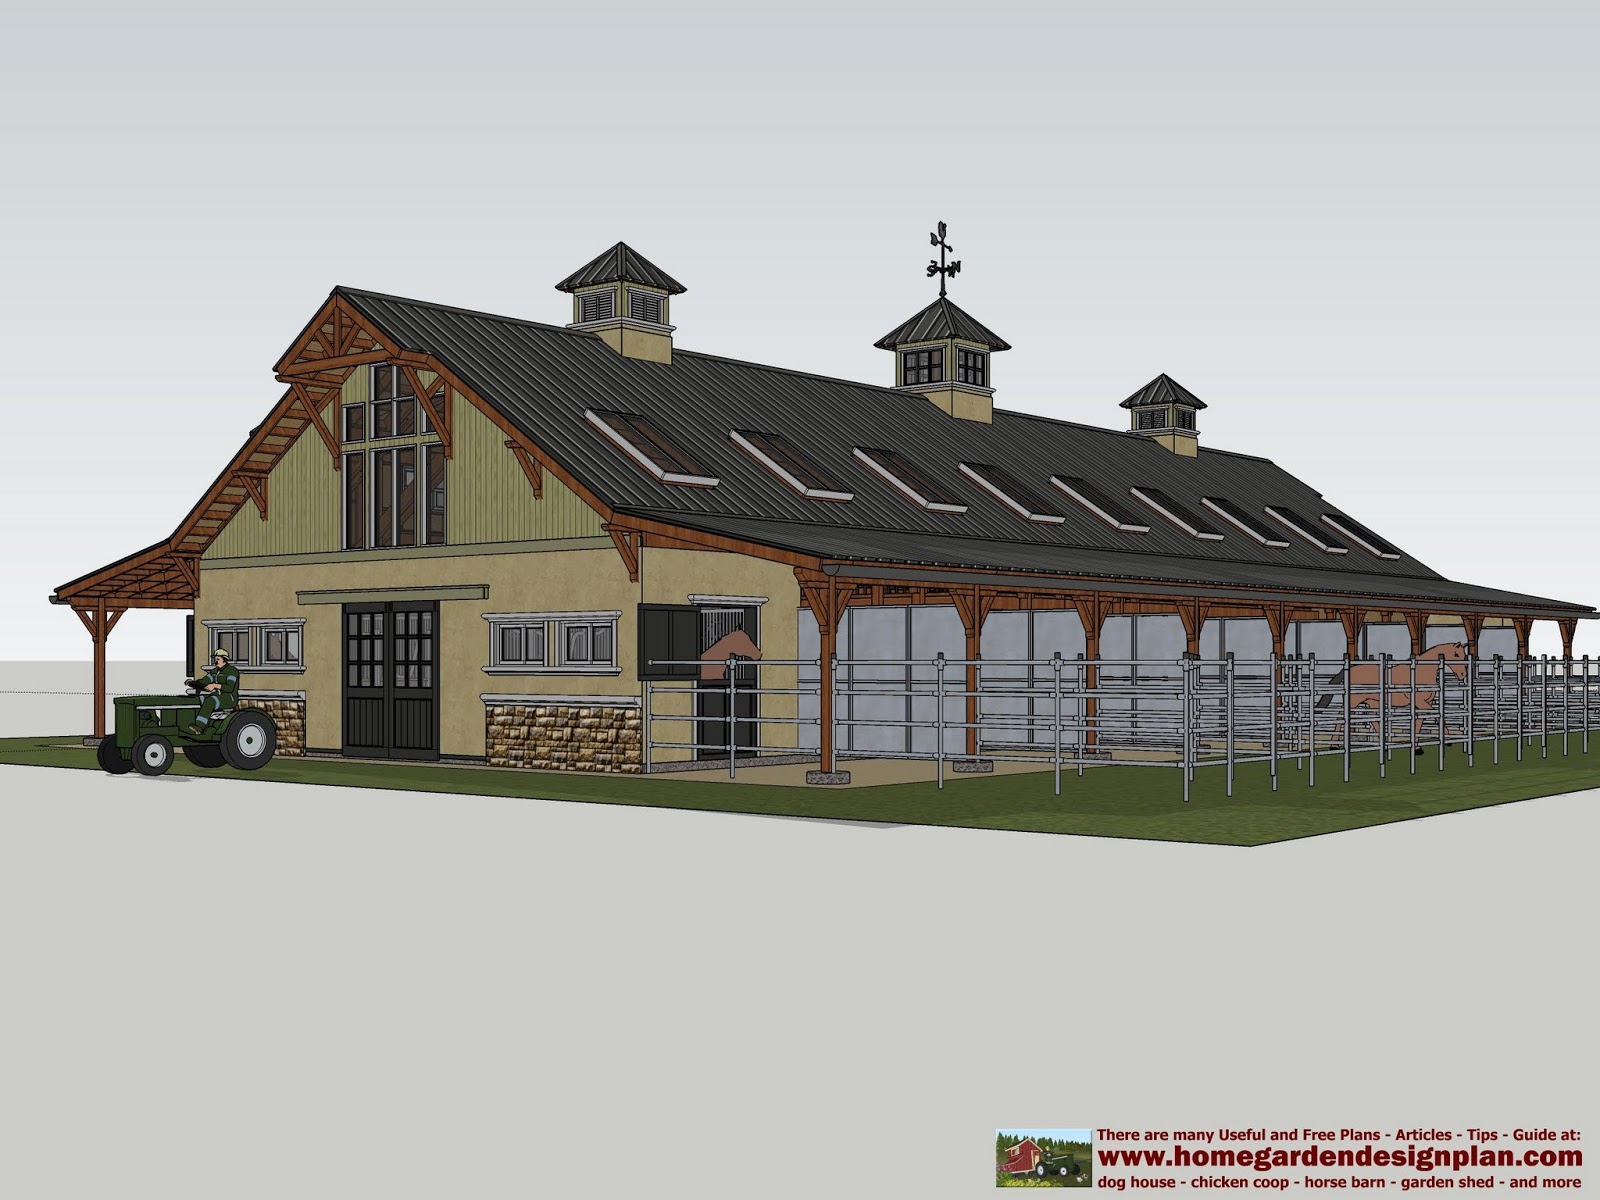 home garden plans: hb100 - horse barn plans - horse barn